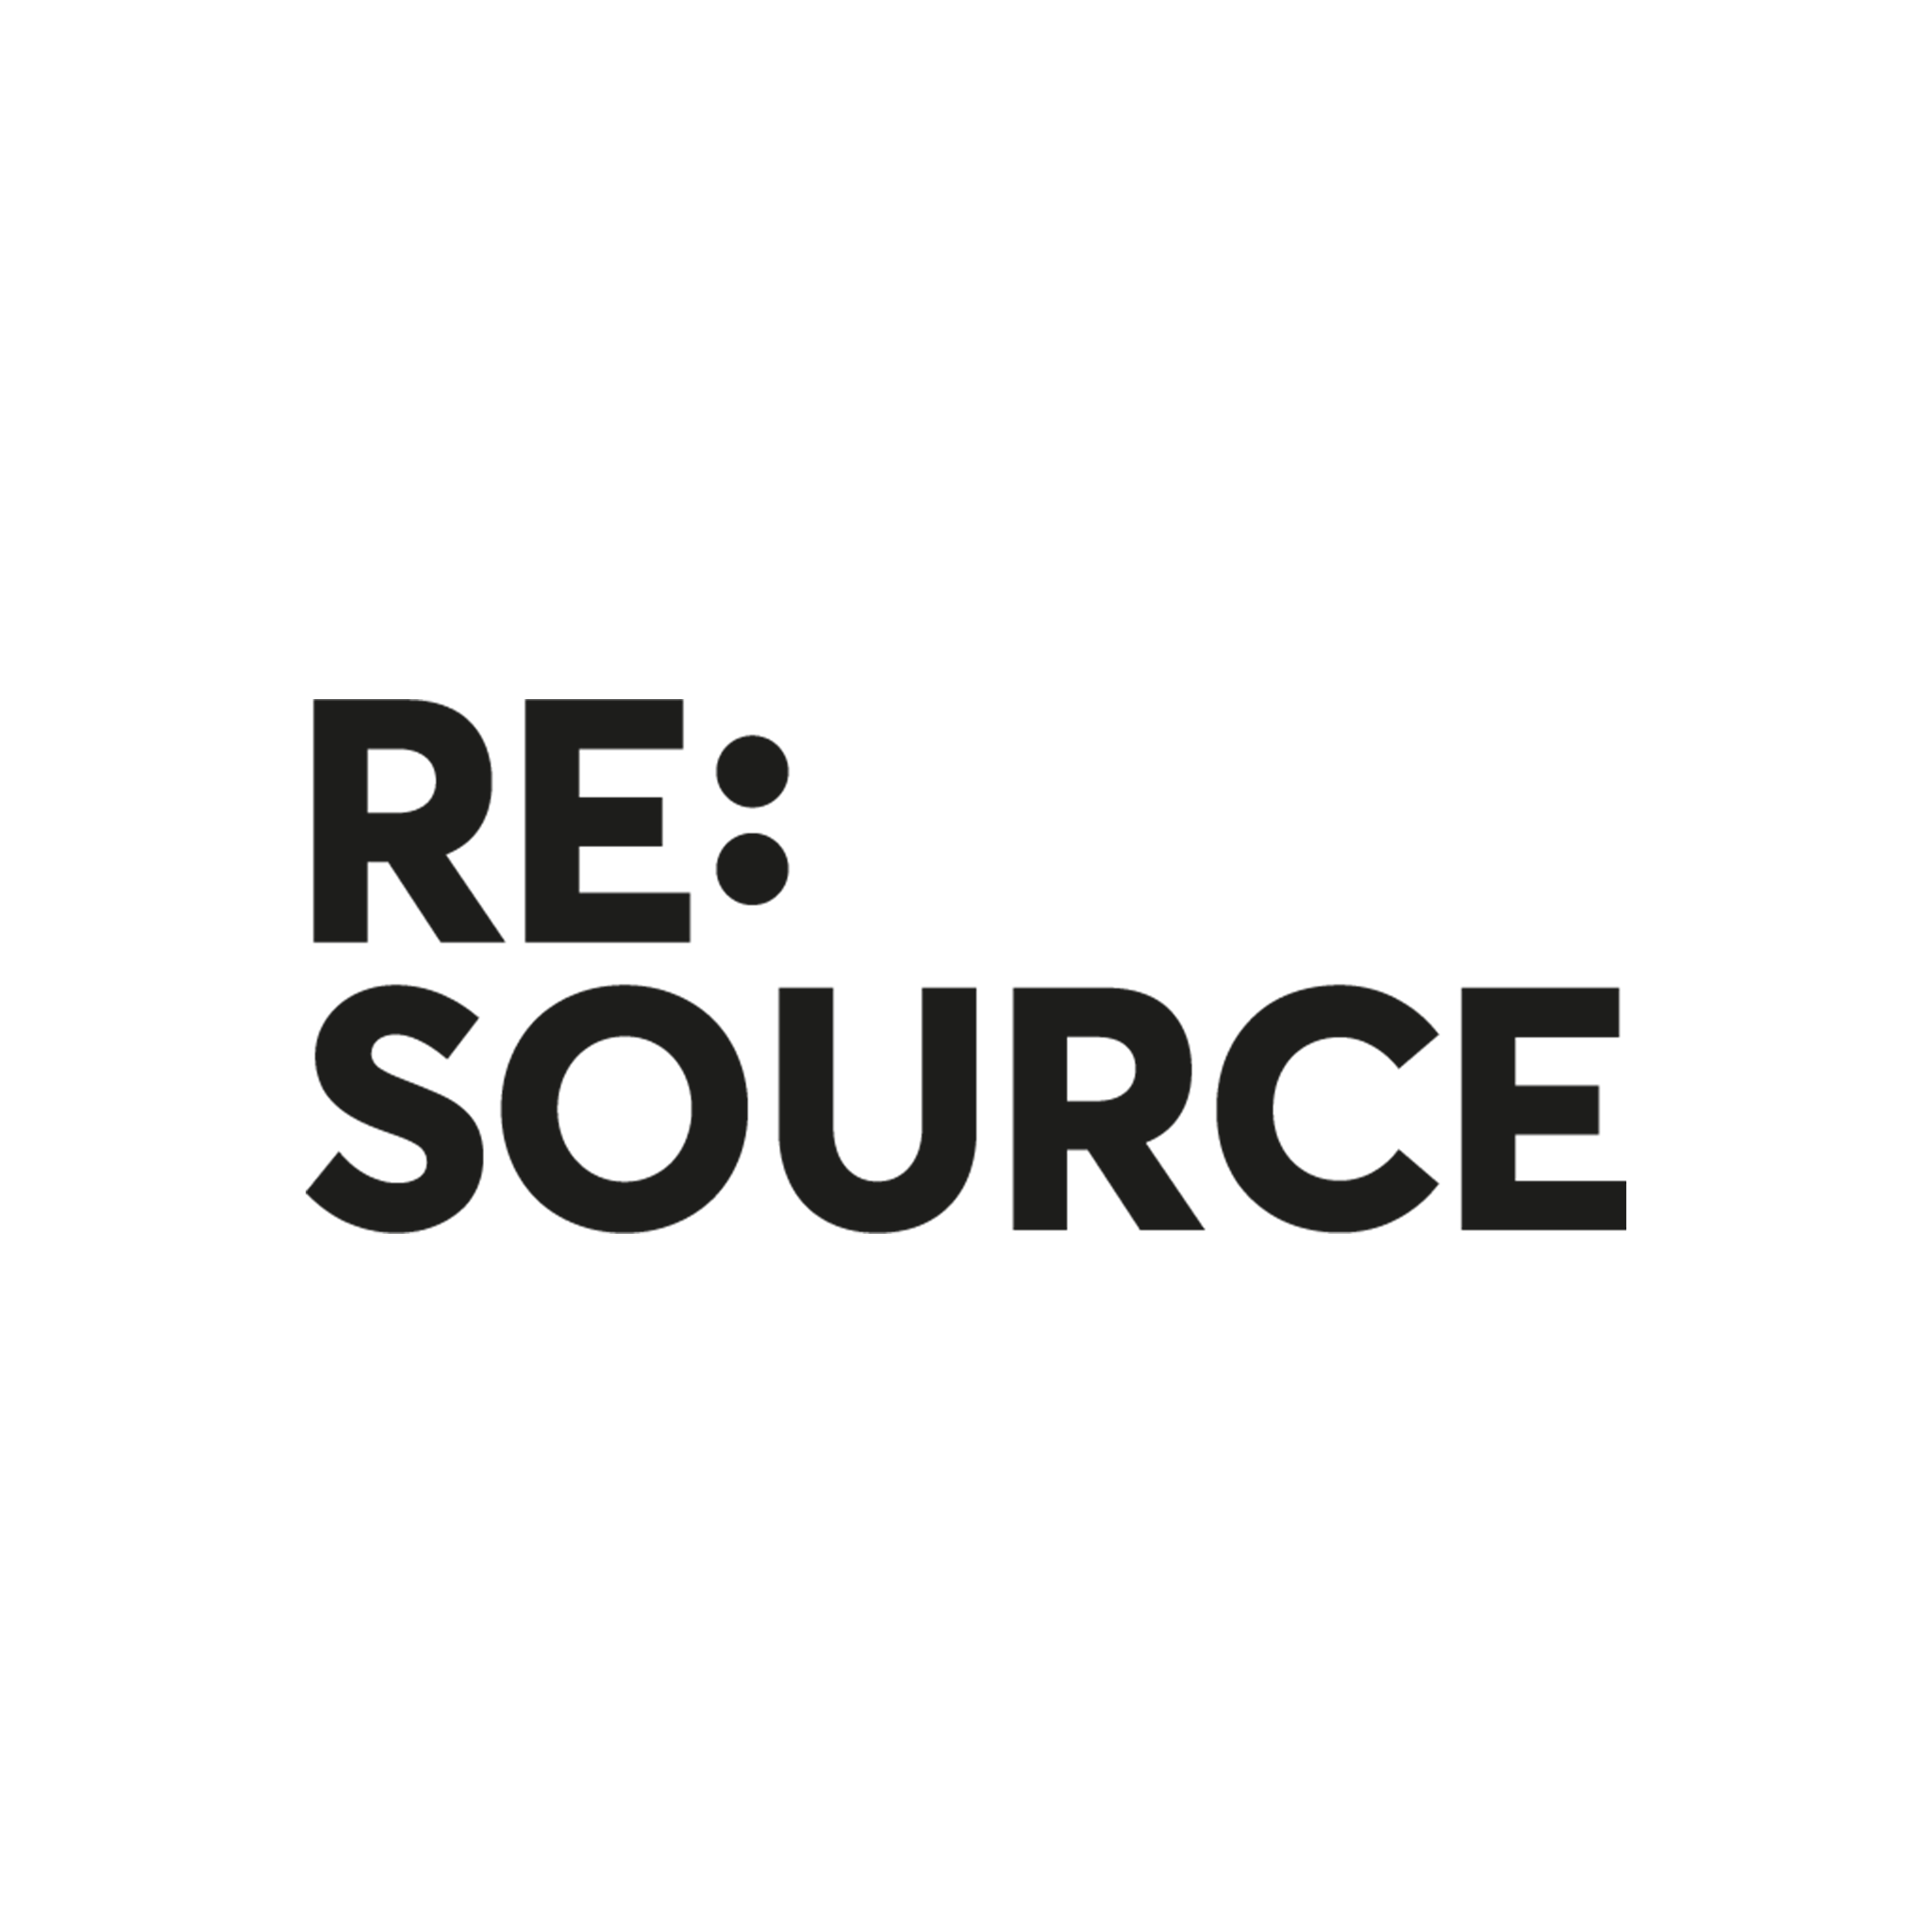 RE:Source logo black